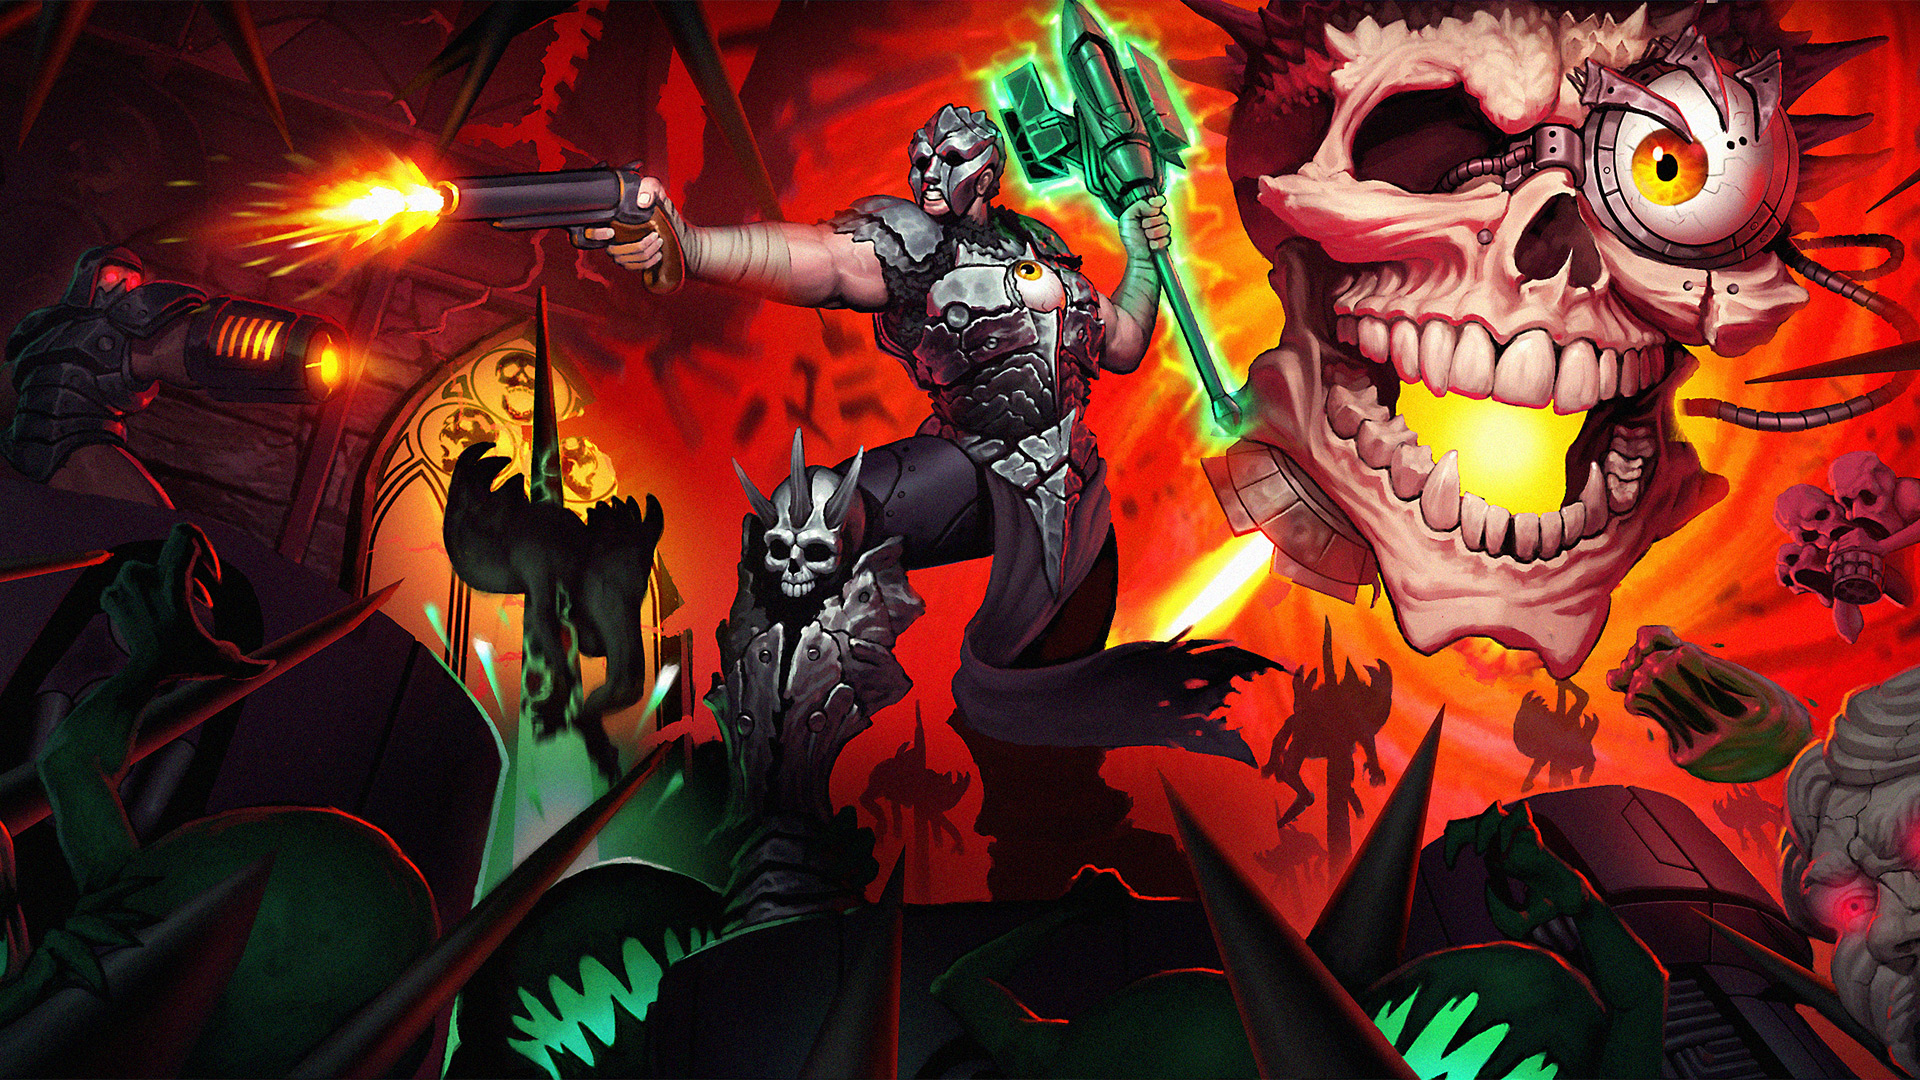 Metal Hellsinger trophies are more Doom than Doom Eternal